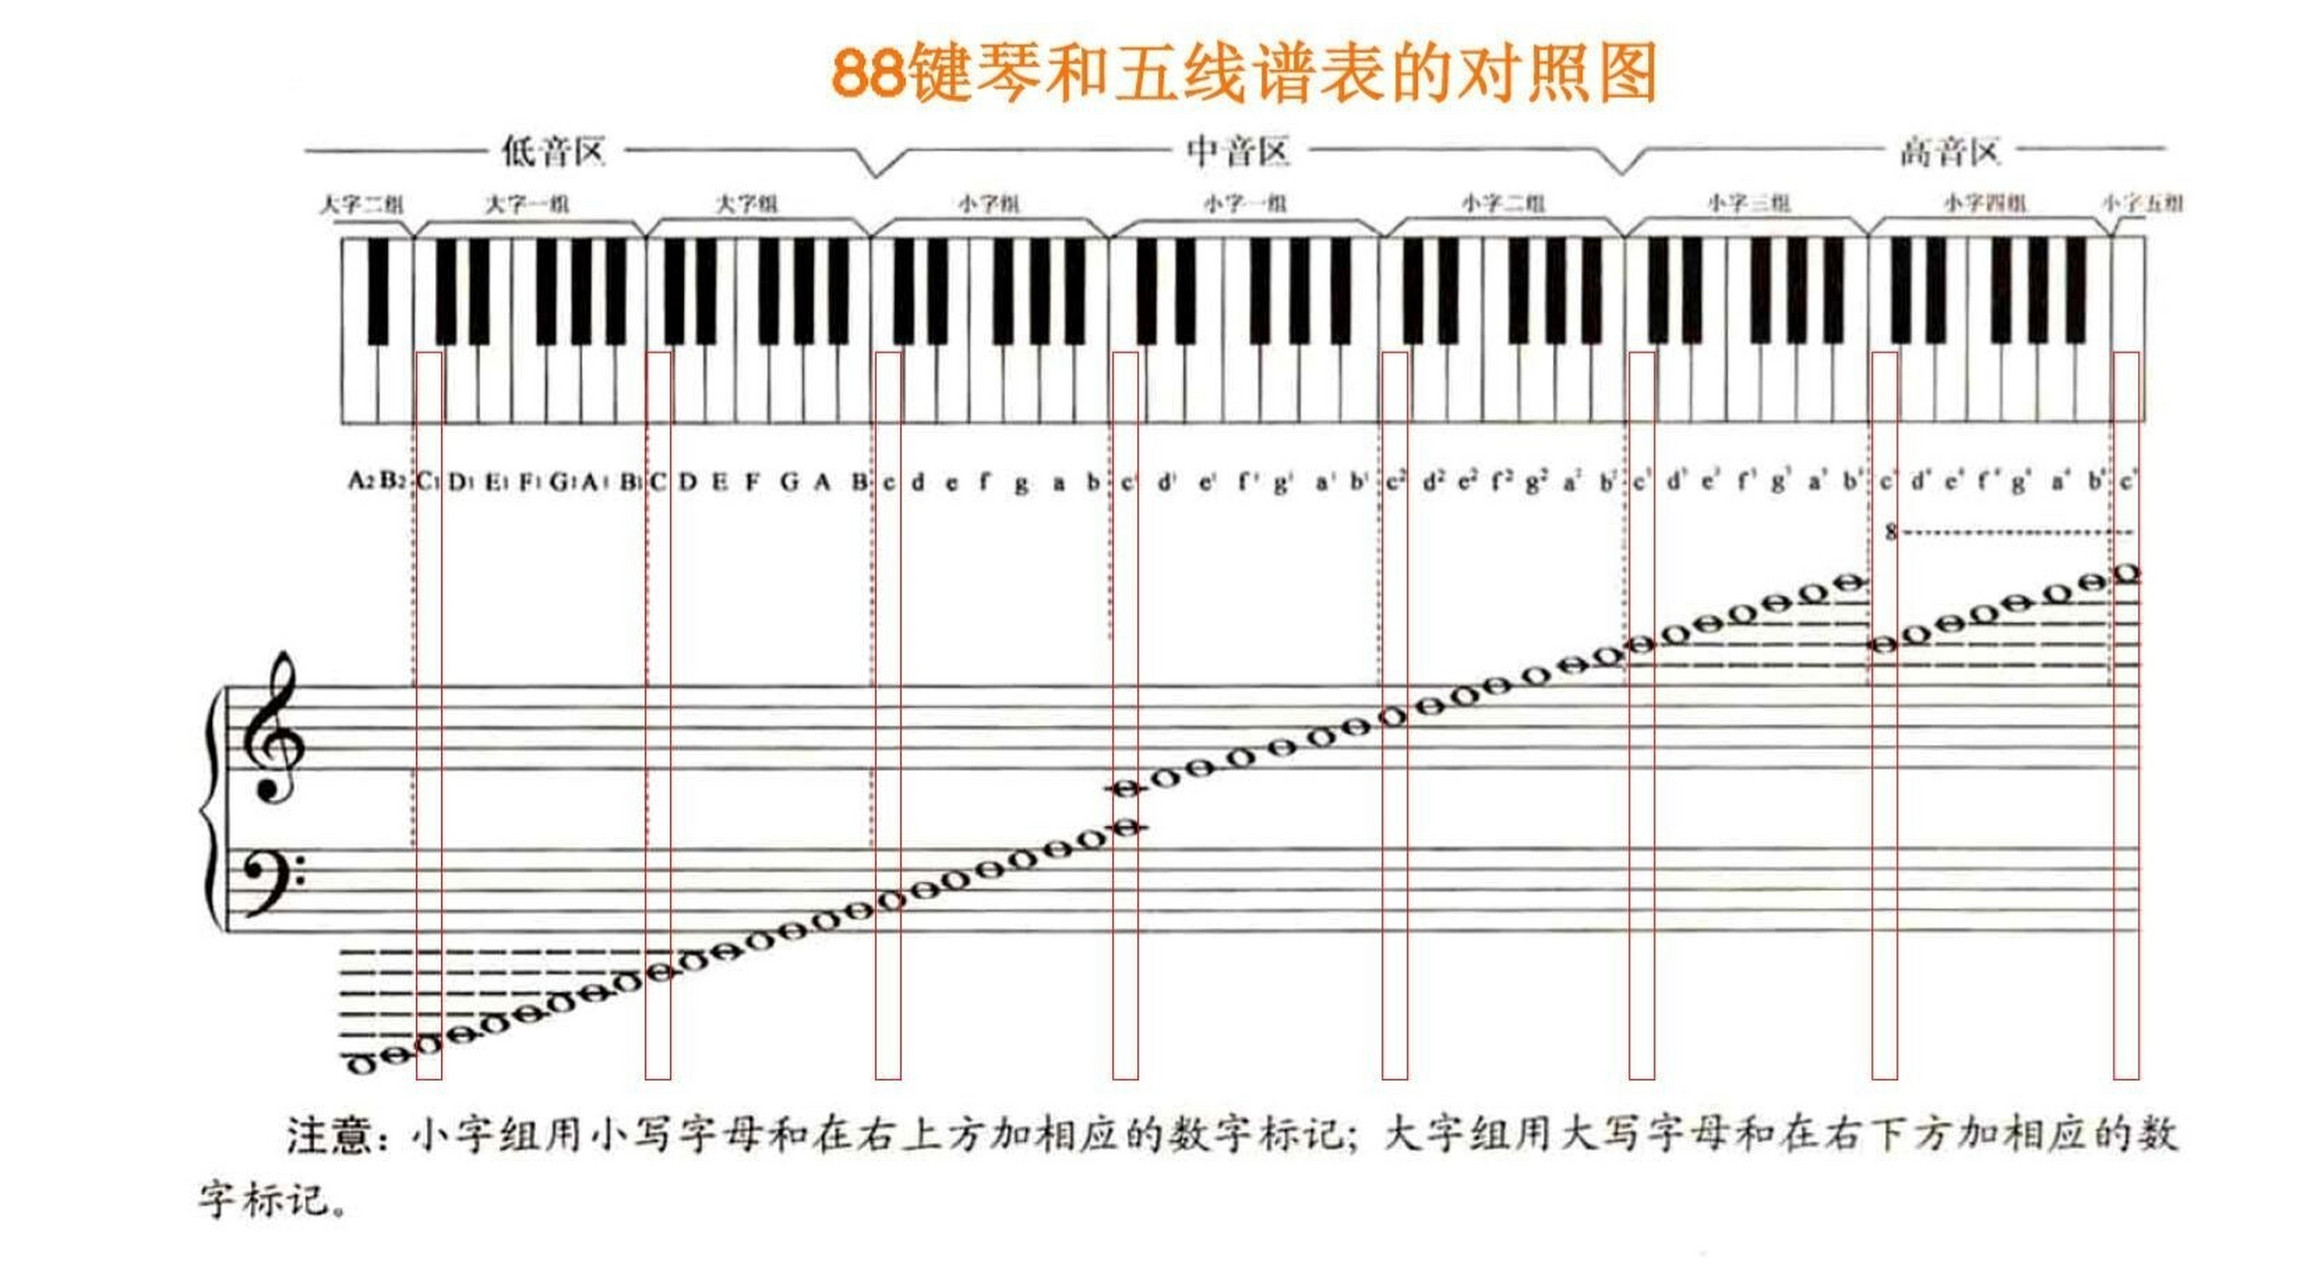 钢琴基本乐理知识——初步认识琴键 9896钢琴有88个琴键,其中白键